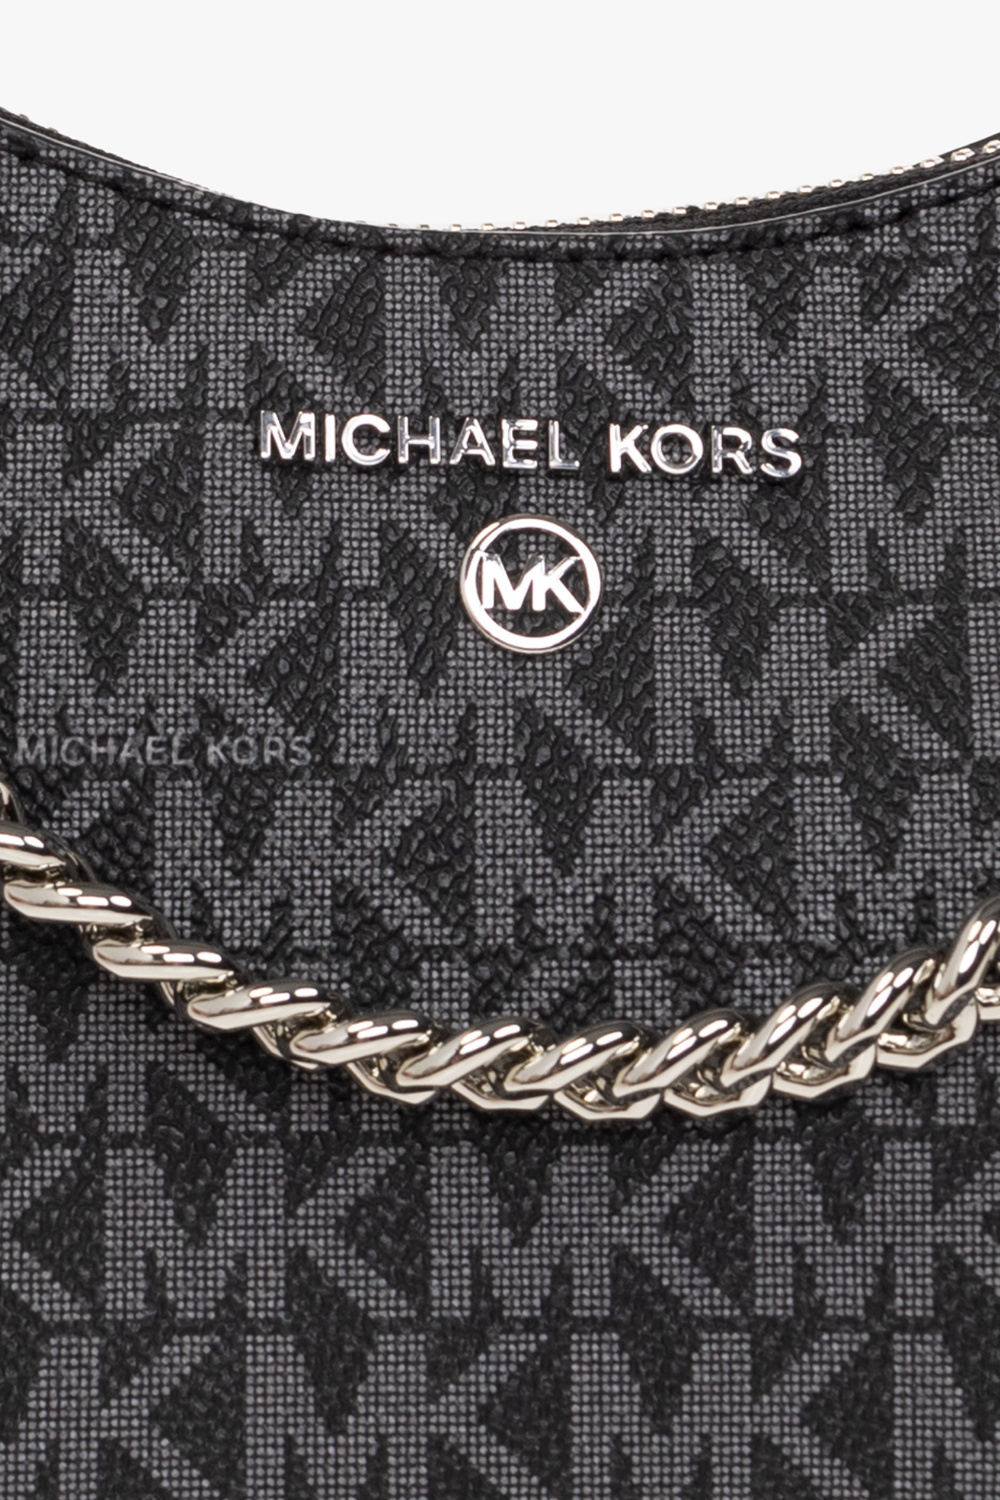 Michael Michael Kors ‘Jet Set Charm Small’ handbag